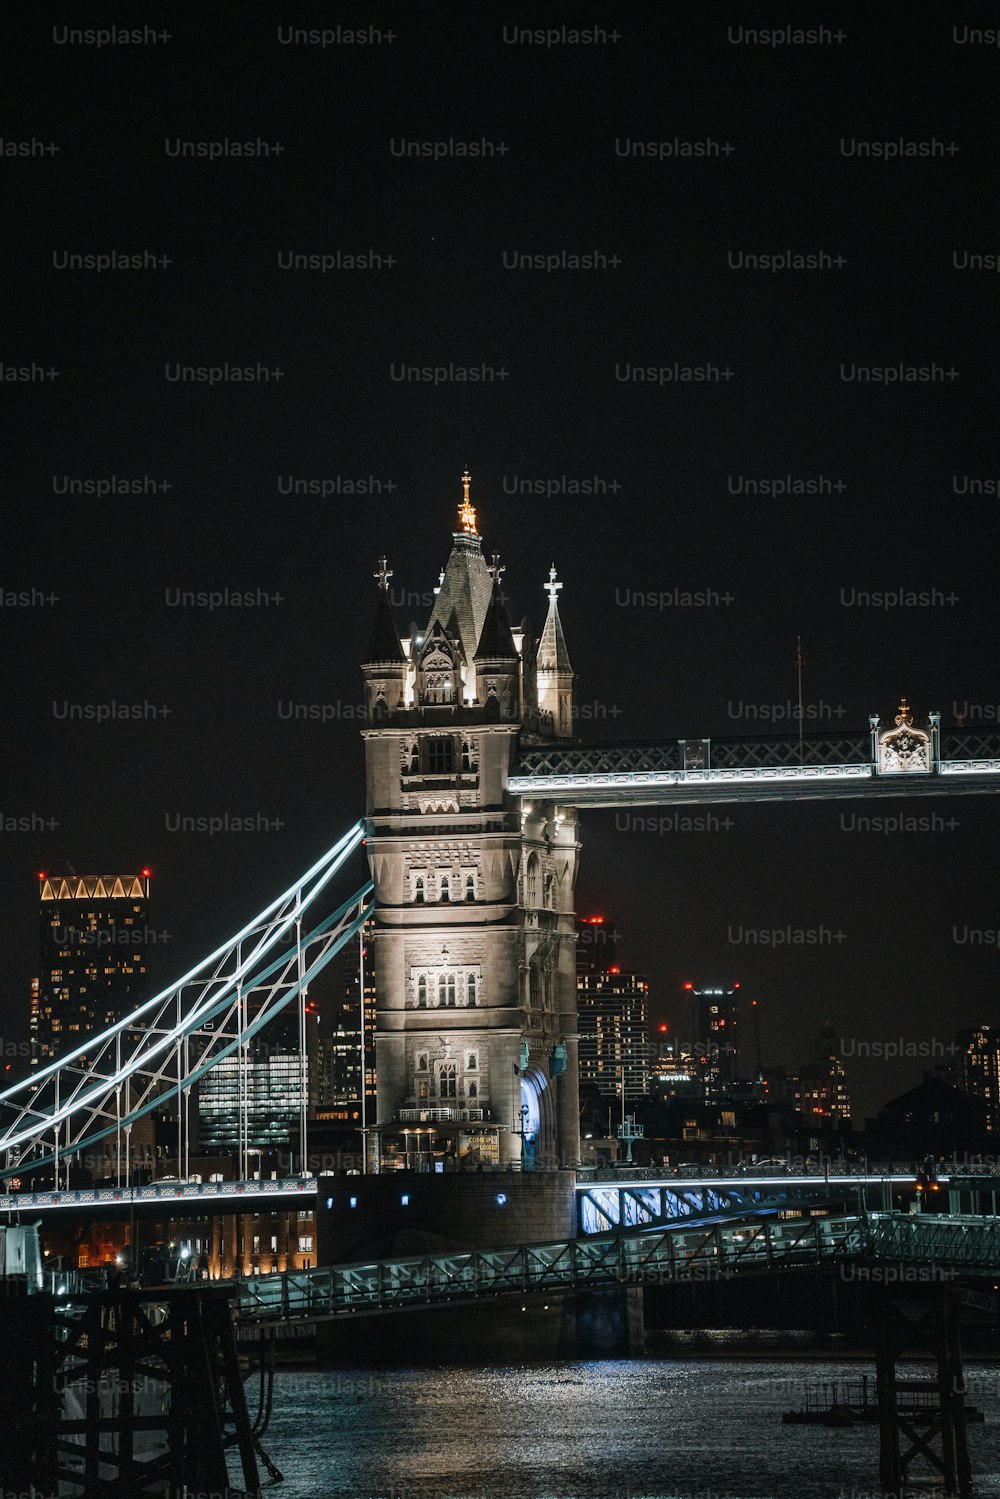 Die Tower Bridge ist nachts beleuchtet